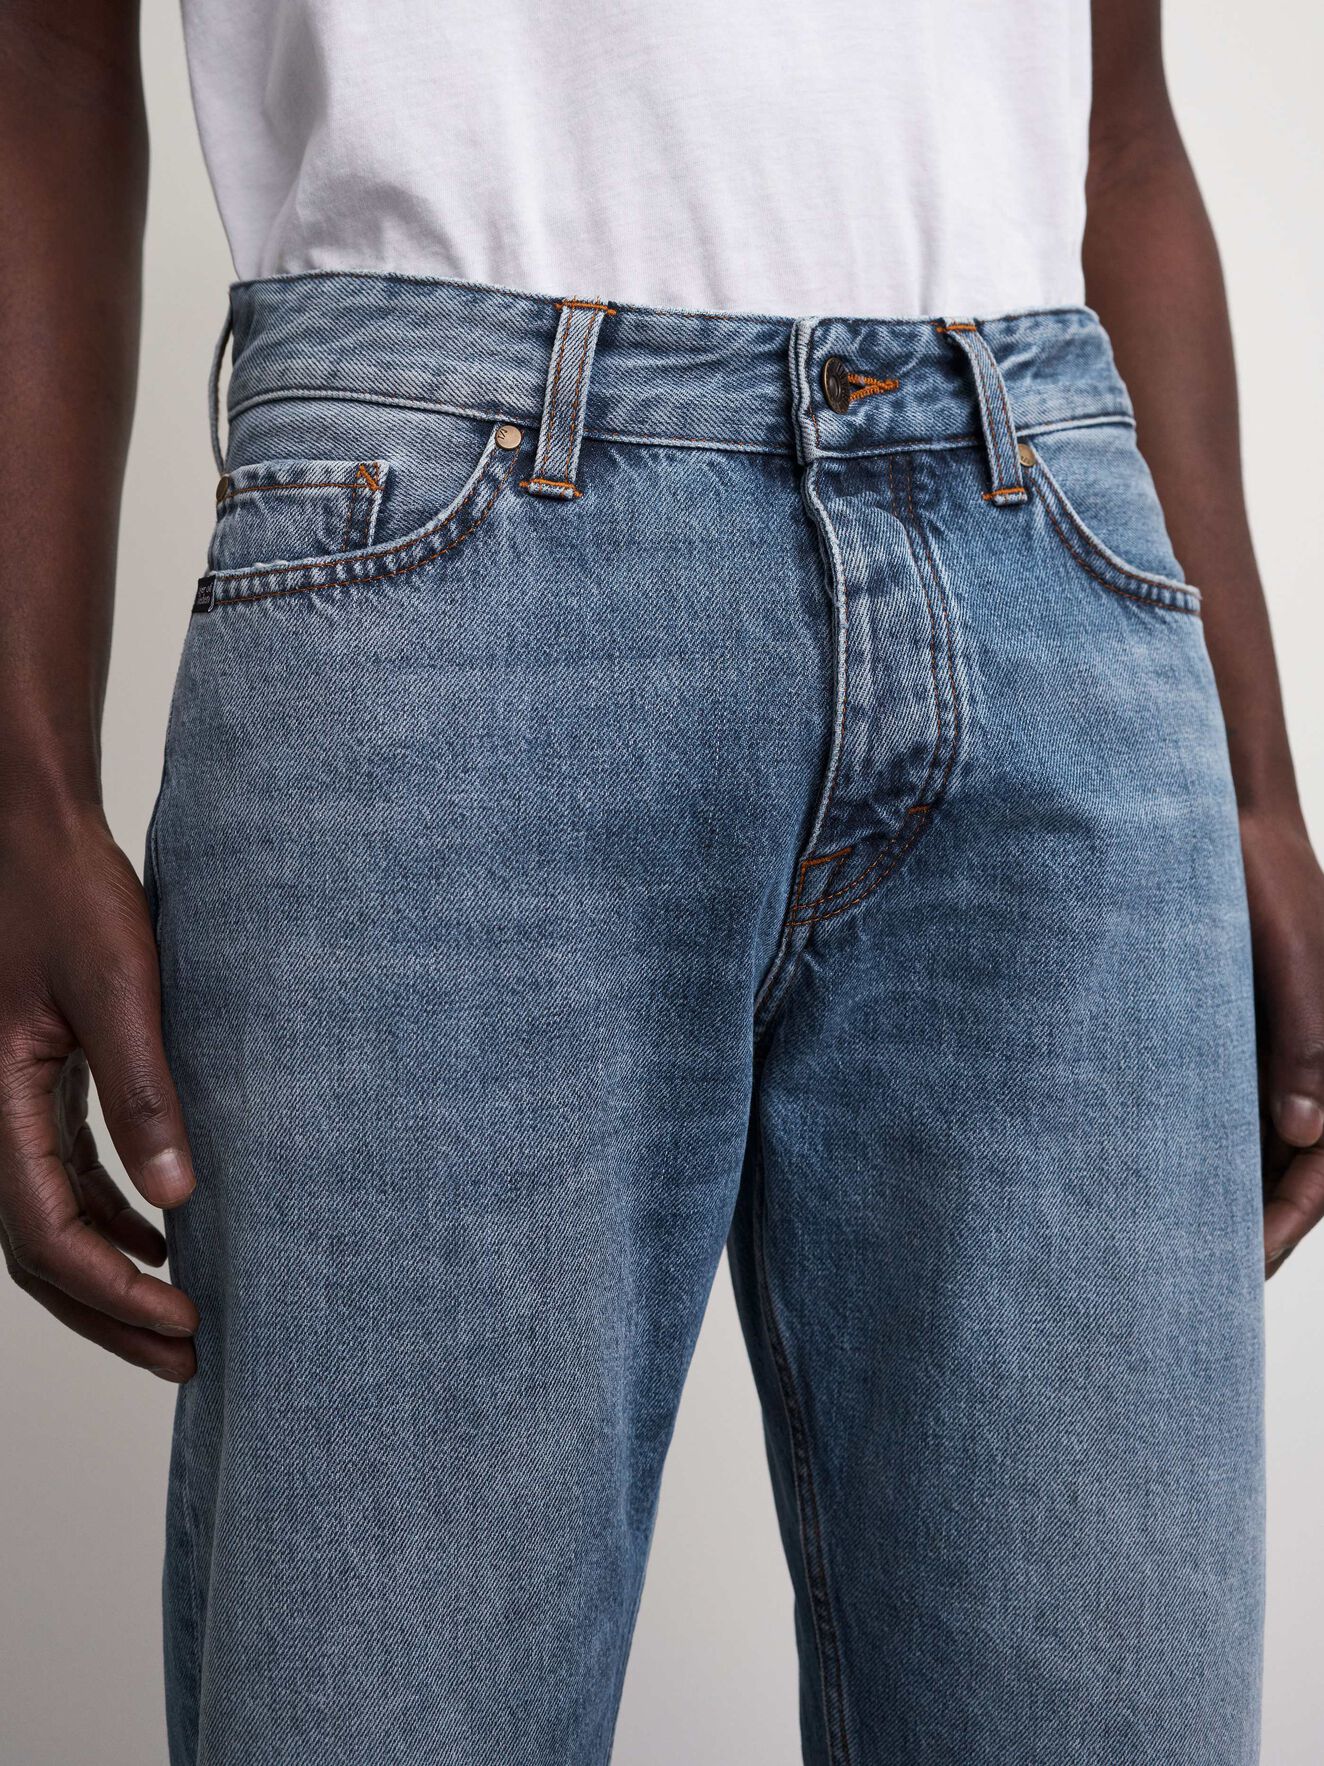 Nico Jeans - Buy